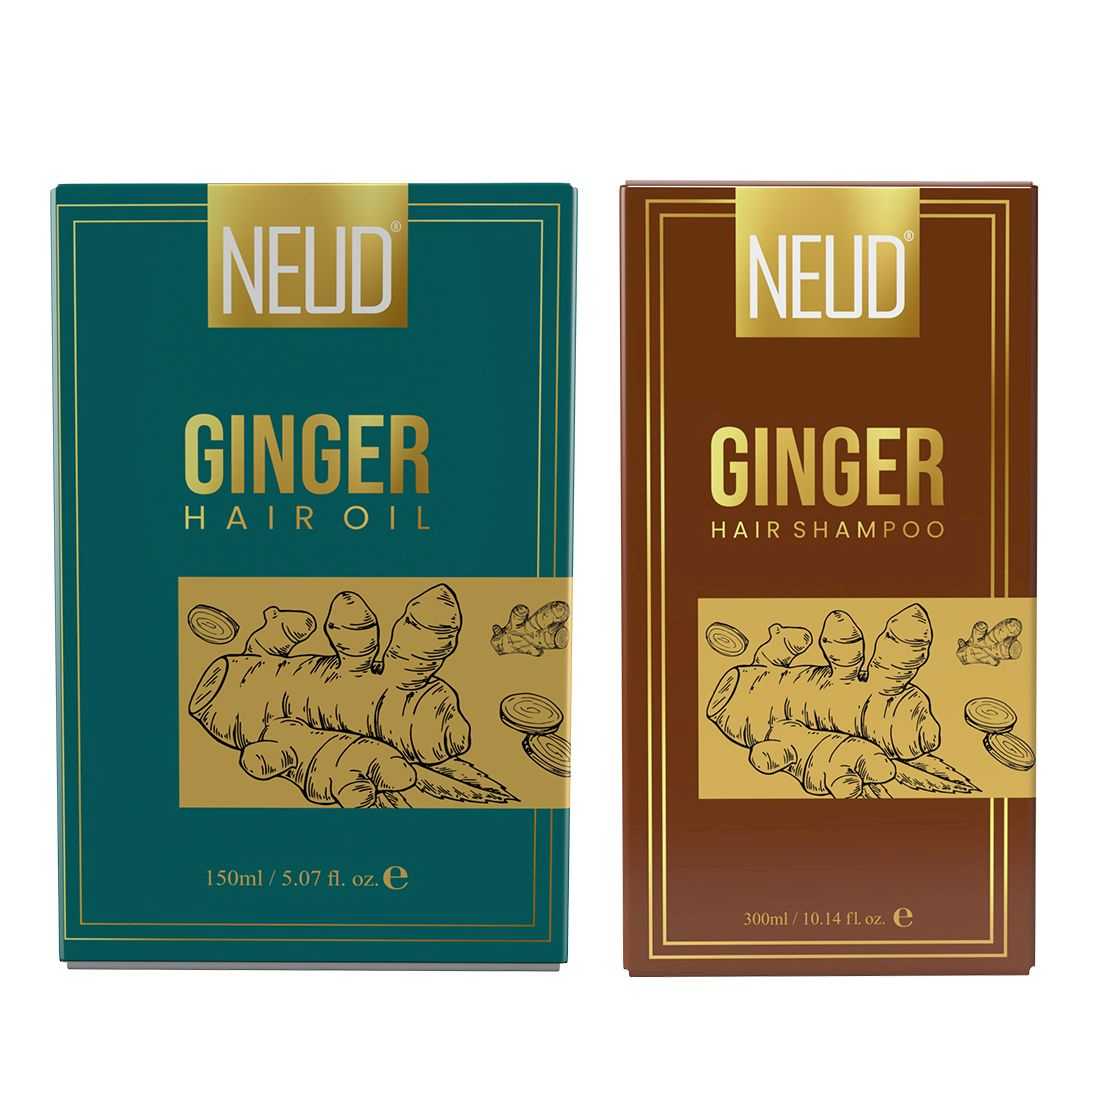 NEUD Combo - Ginger Hair Oil and Shampoo for Men & Women